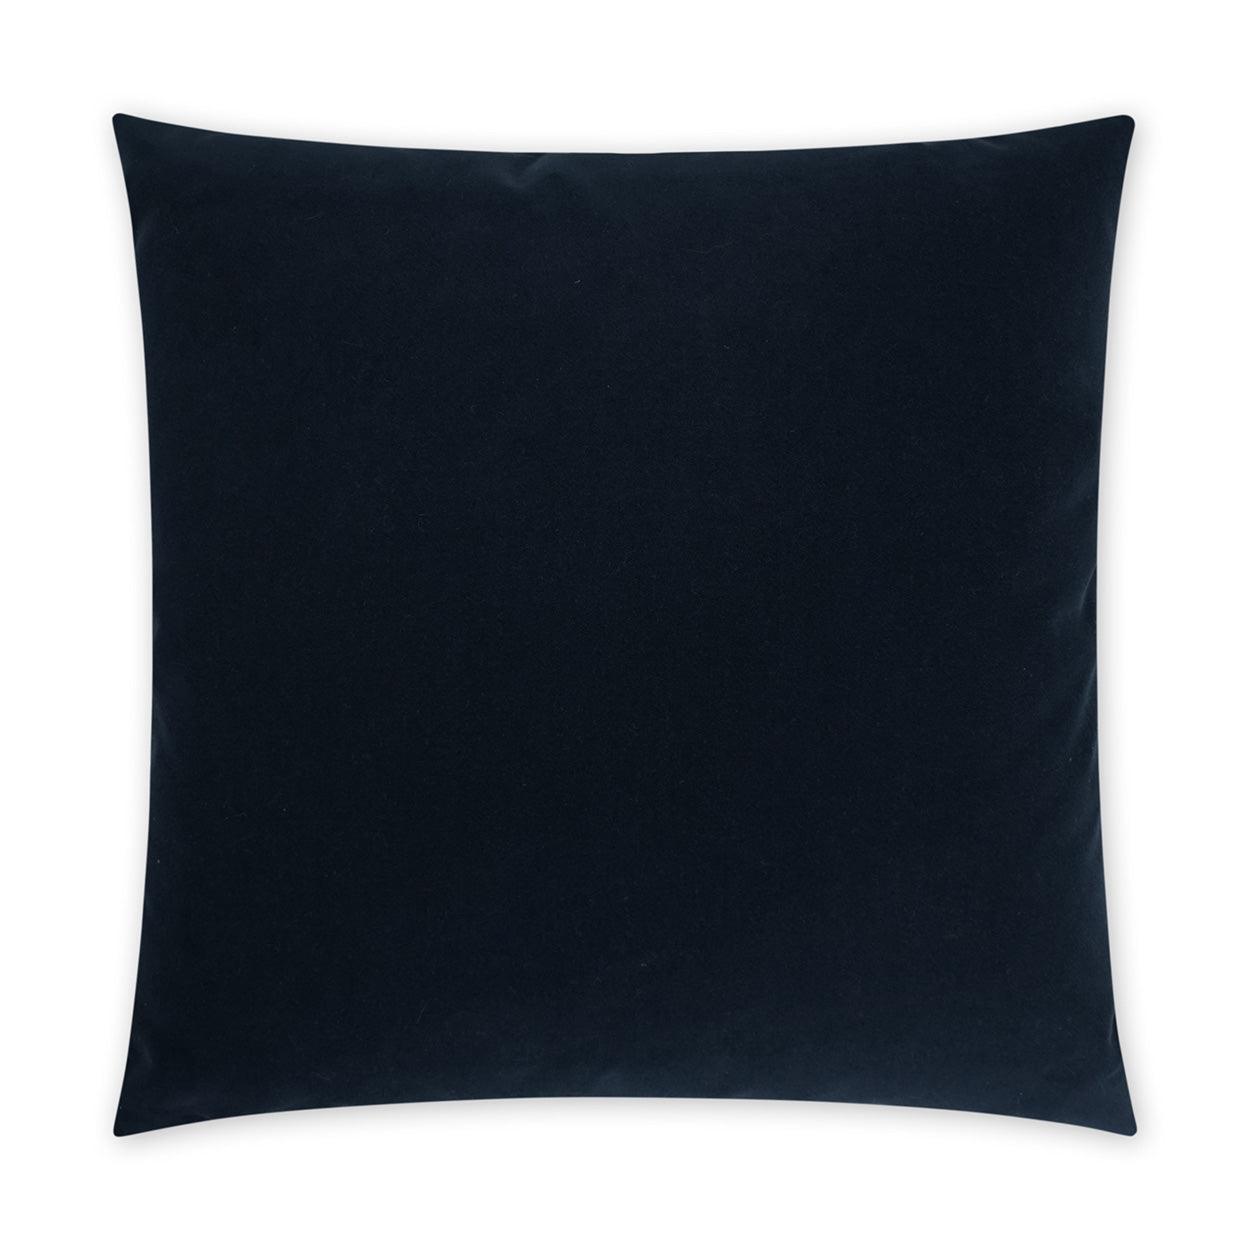 LOOMLAN Outdoor - Outdoor Sundance Duo Pillow - Navy - Outdoor Pillows